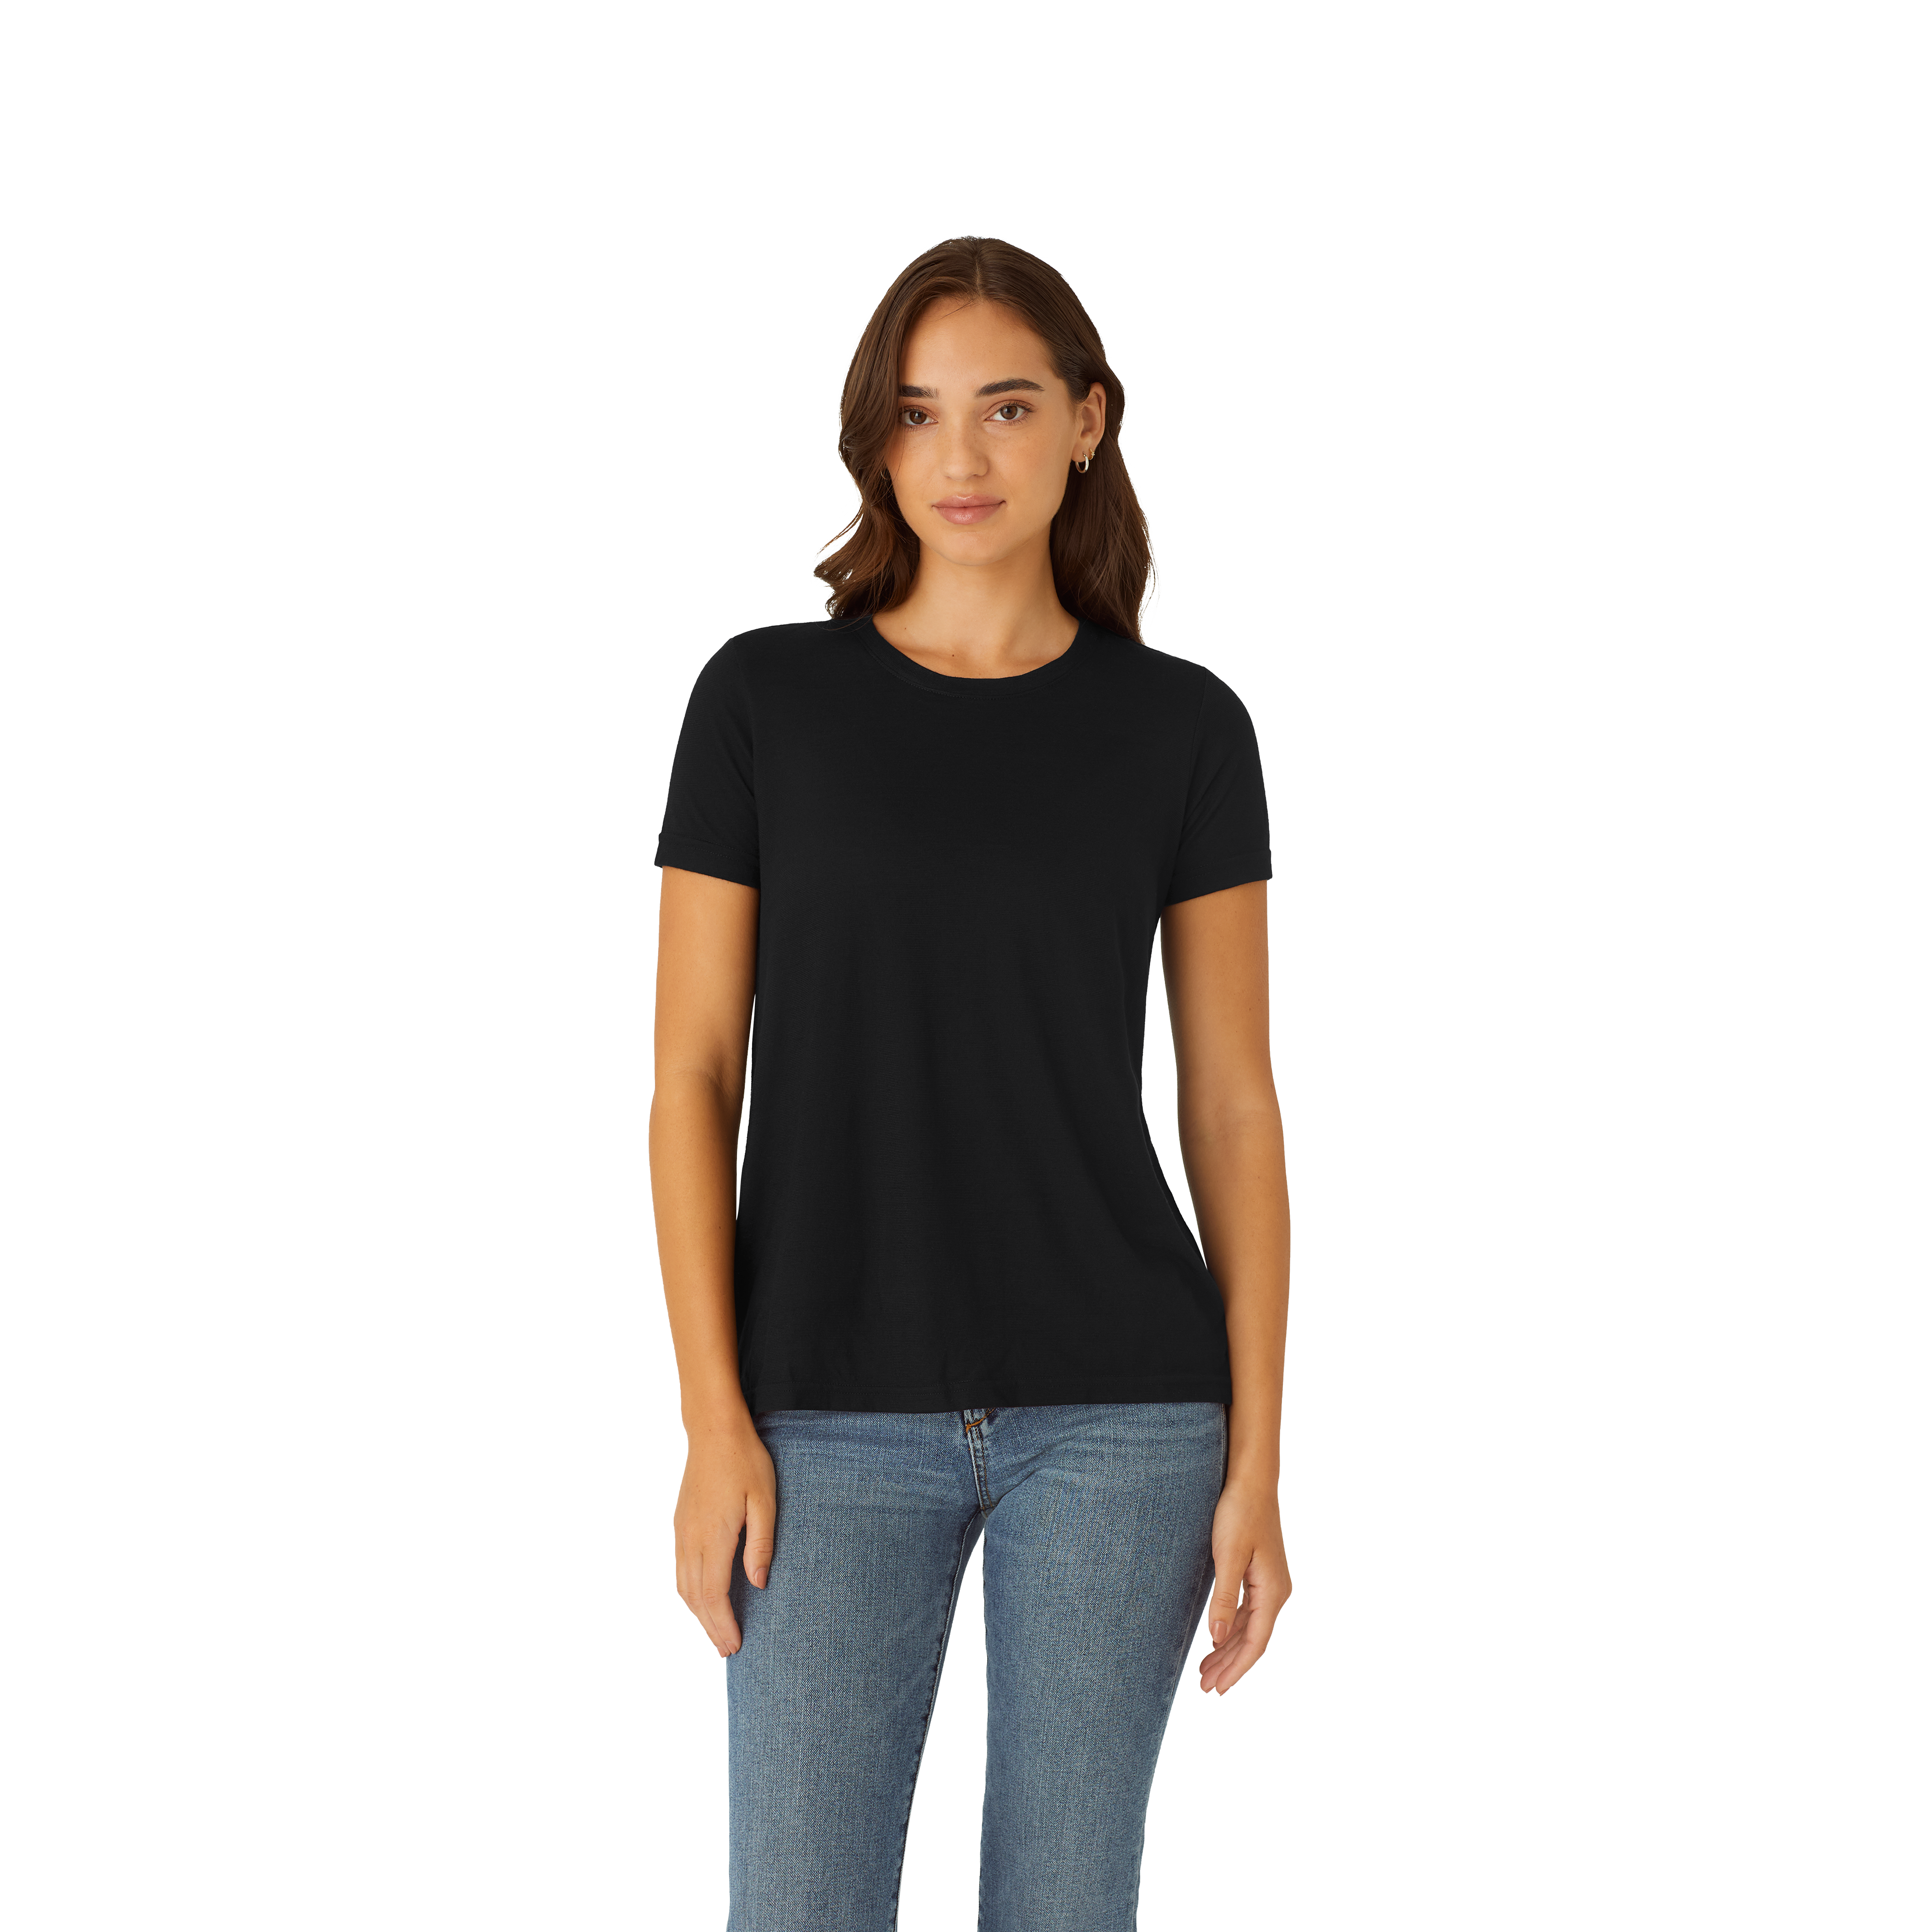 MAMA Microfiber T-shirt - Black - Ladies